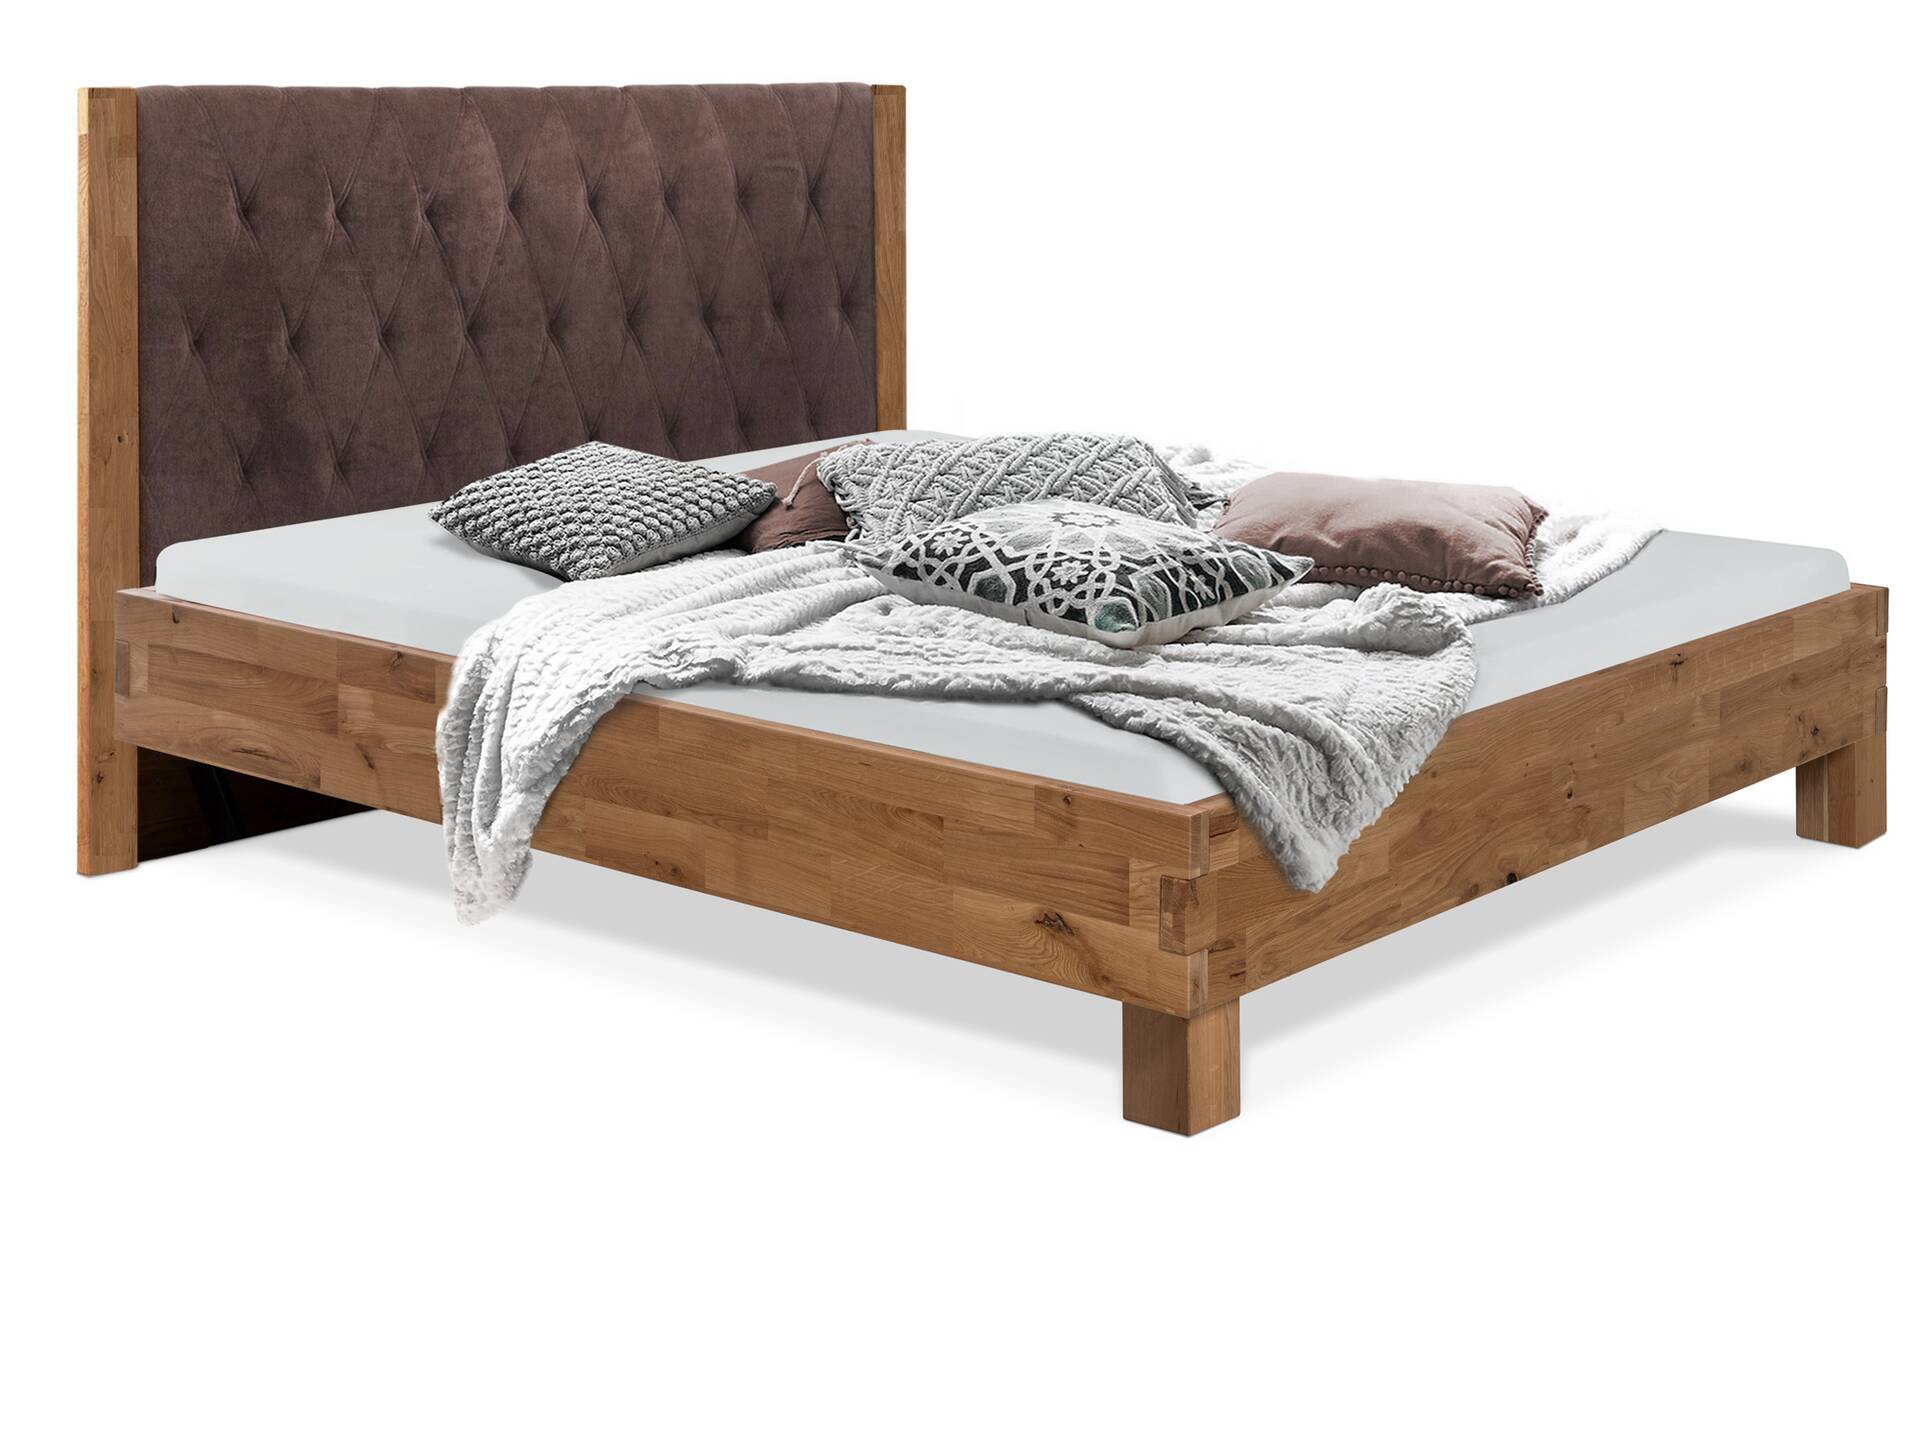 CORDINO 4-Fuß-Bett aus Eiche mit gestepptem Polster-Kopfteil, Material Massivholz 90 x 200 cm | Eiche lackiert | Stoff Braun | gebürstet